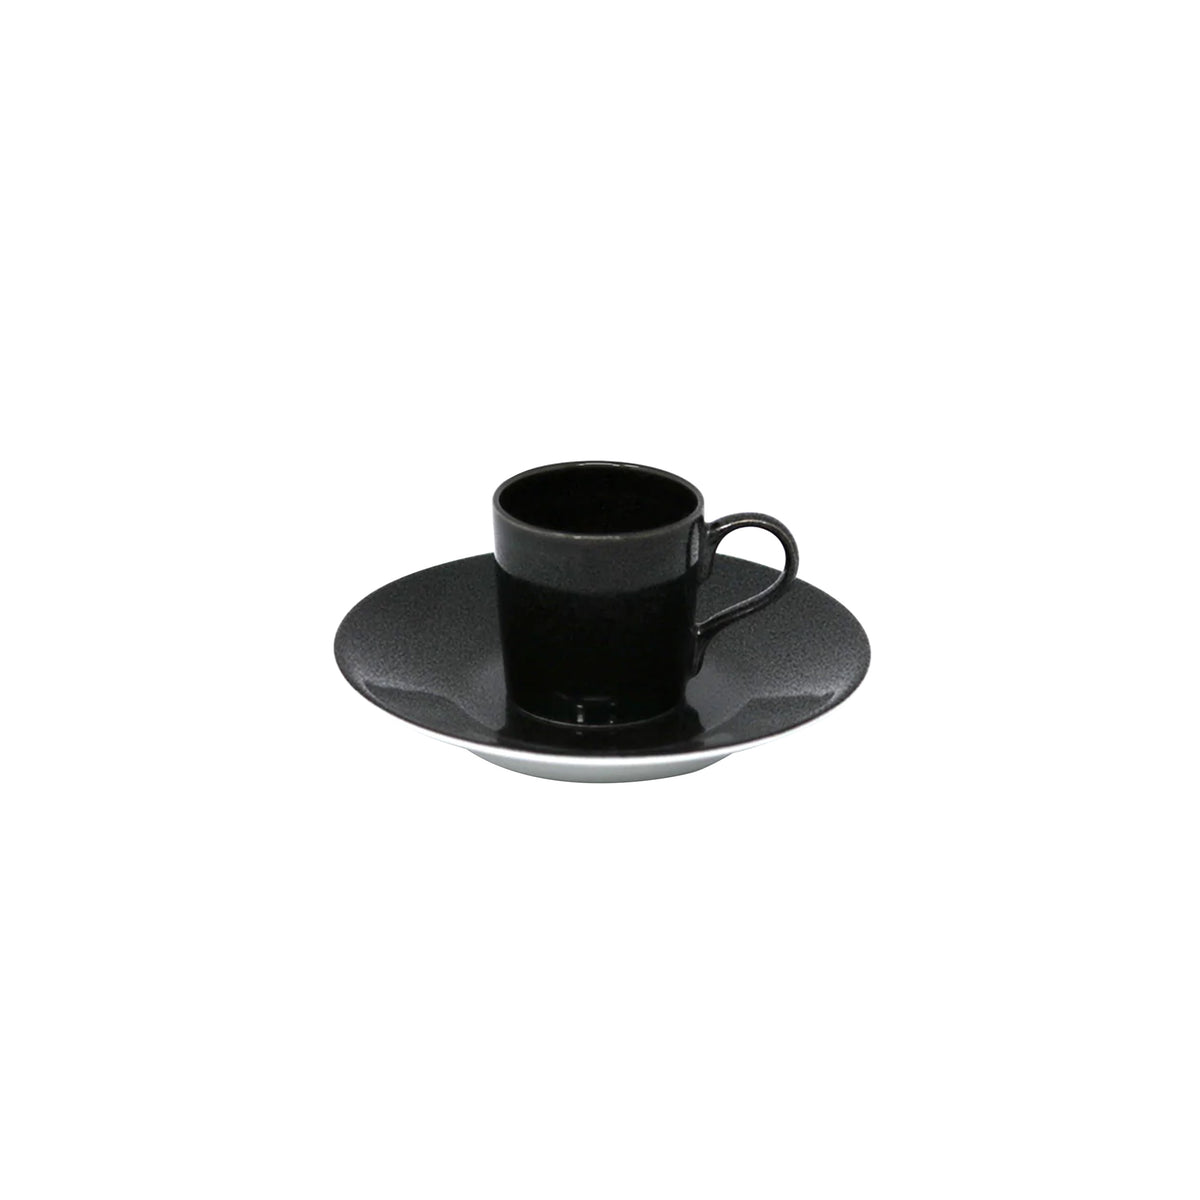 NOIR PAILLETÉ - Coffee set (cup & saucer)